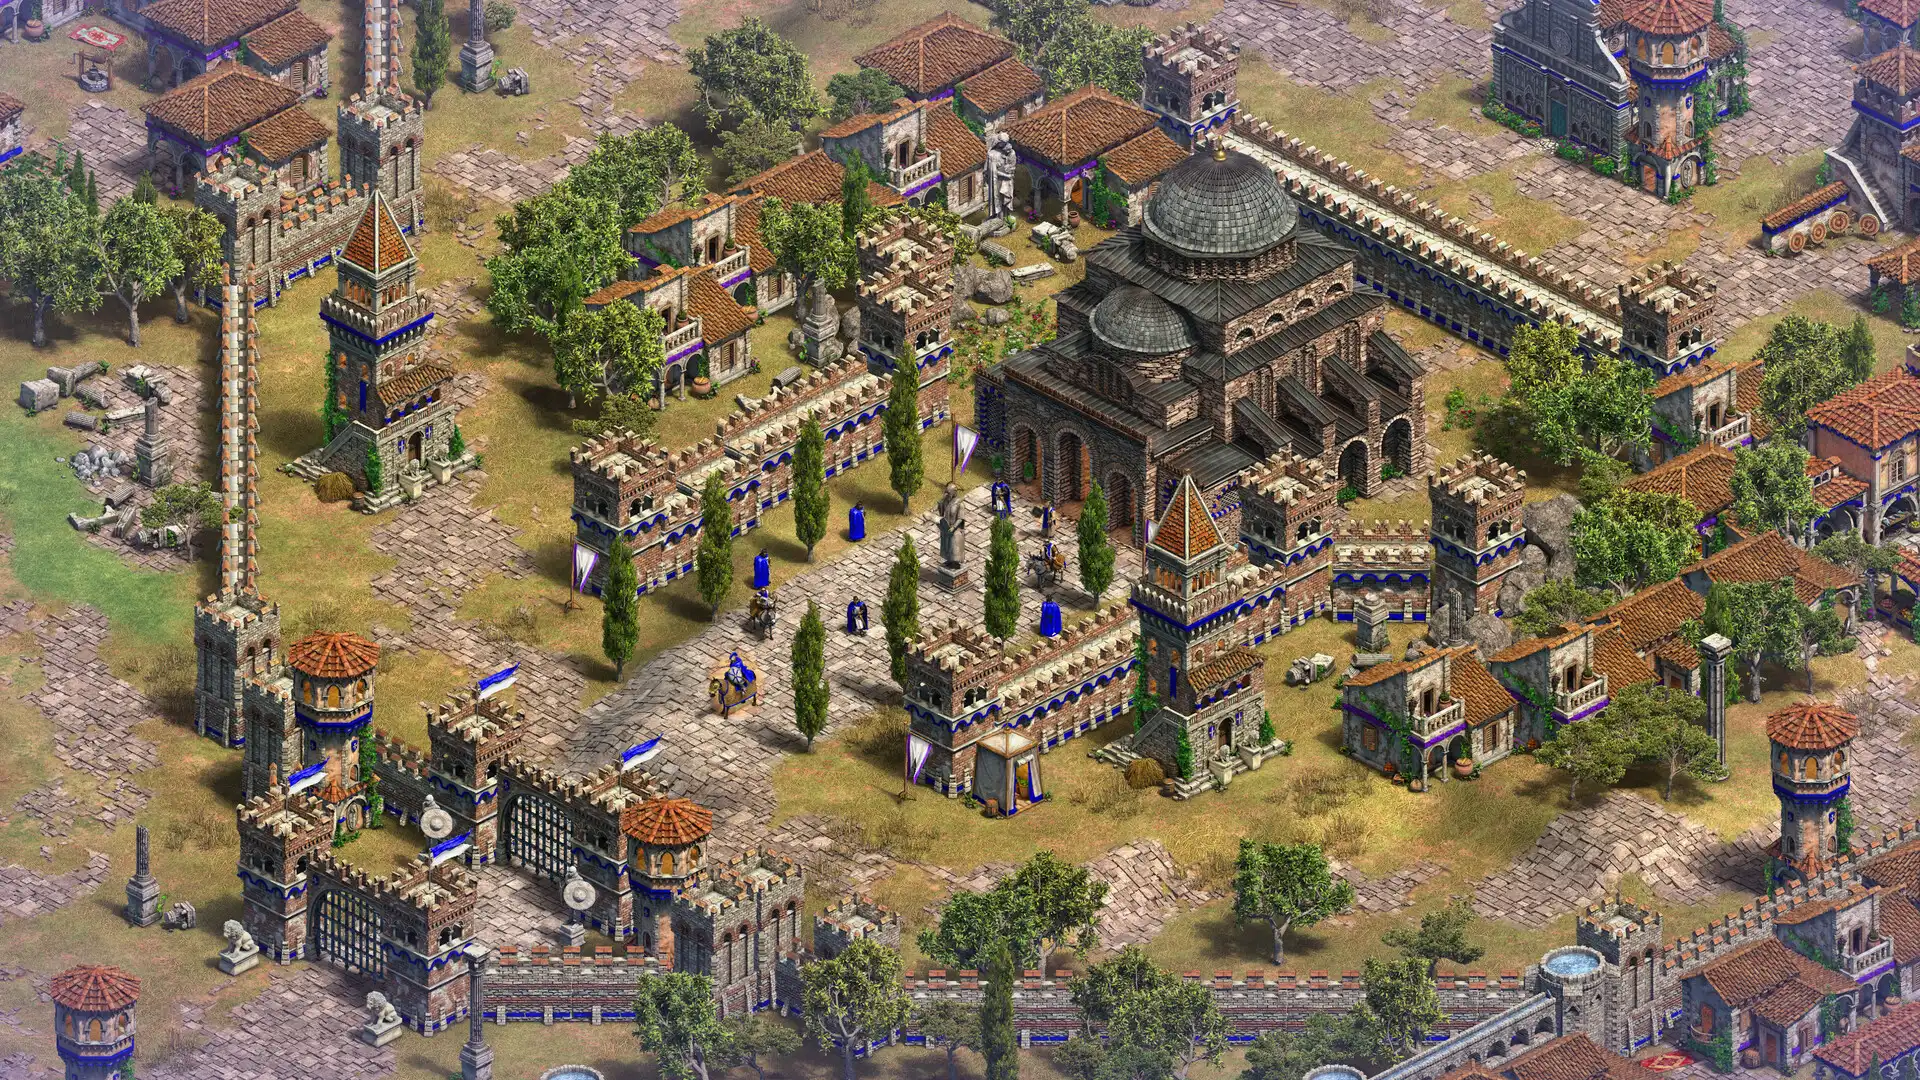 Визуализация дополнения "Владыки и Побежденные" для Age of Empires II.